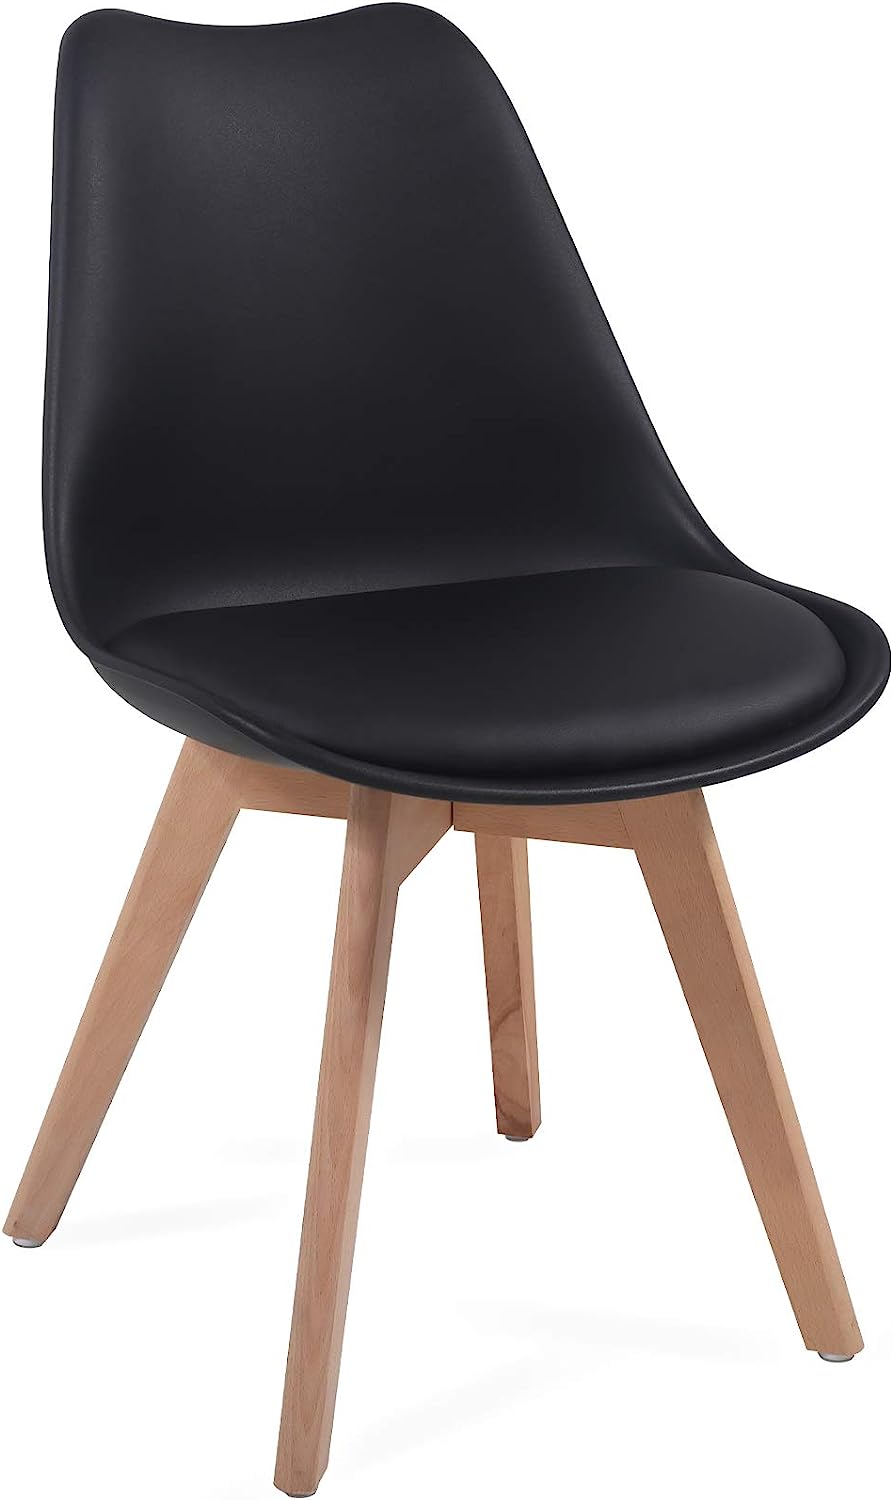 Eetkamerstoelen – Lounge stoelen – Scandinavische stijl – Retro – Vintage – Gestoffeerd – Set van 4 – Zwart